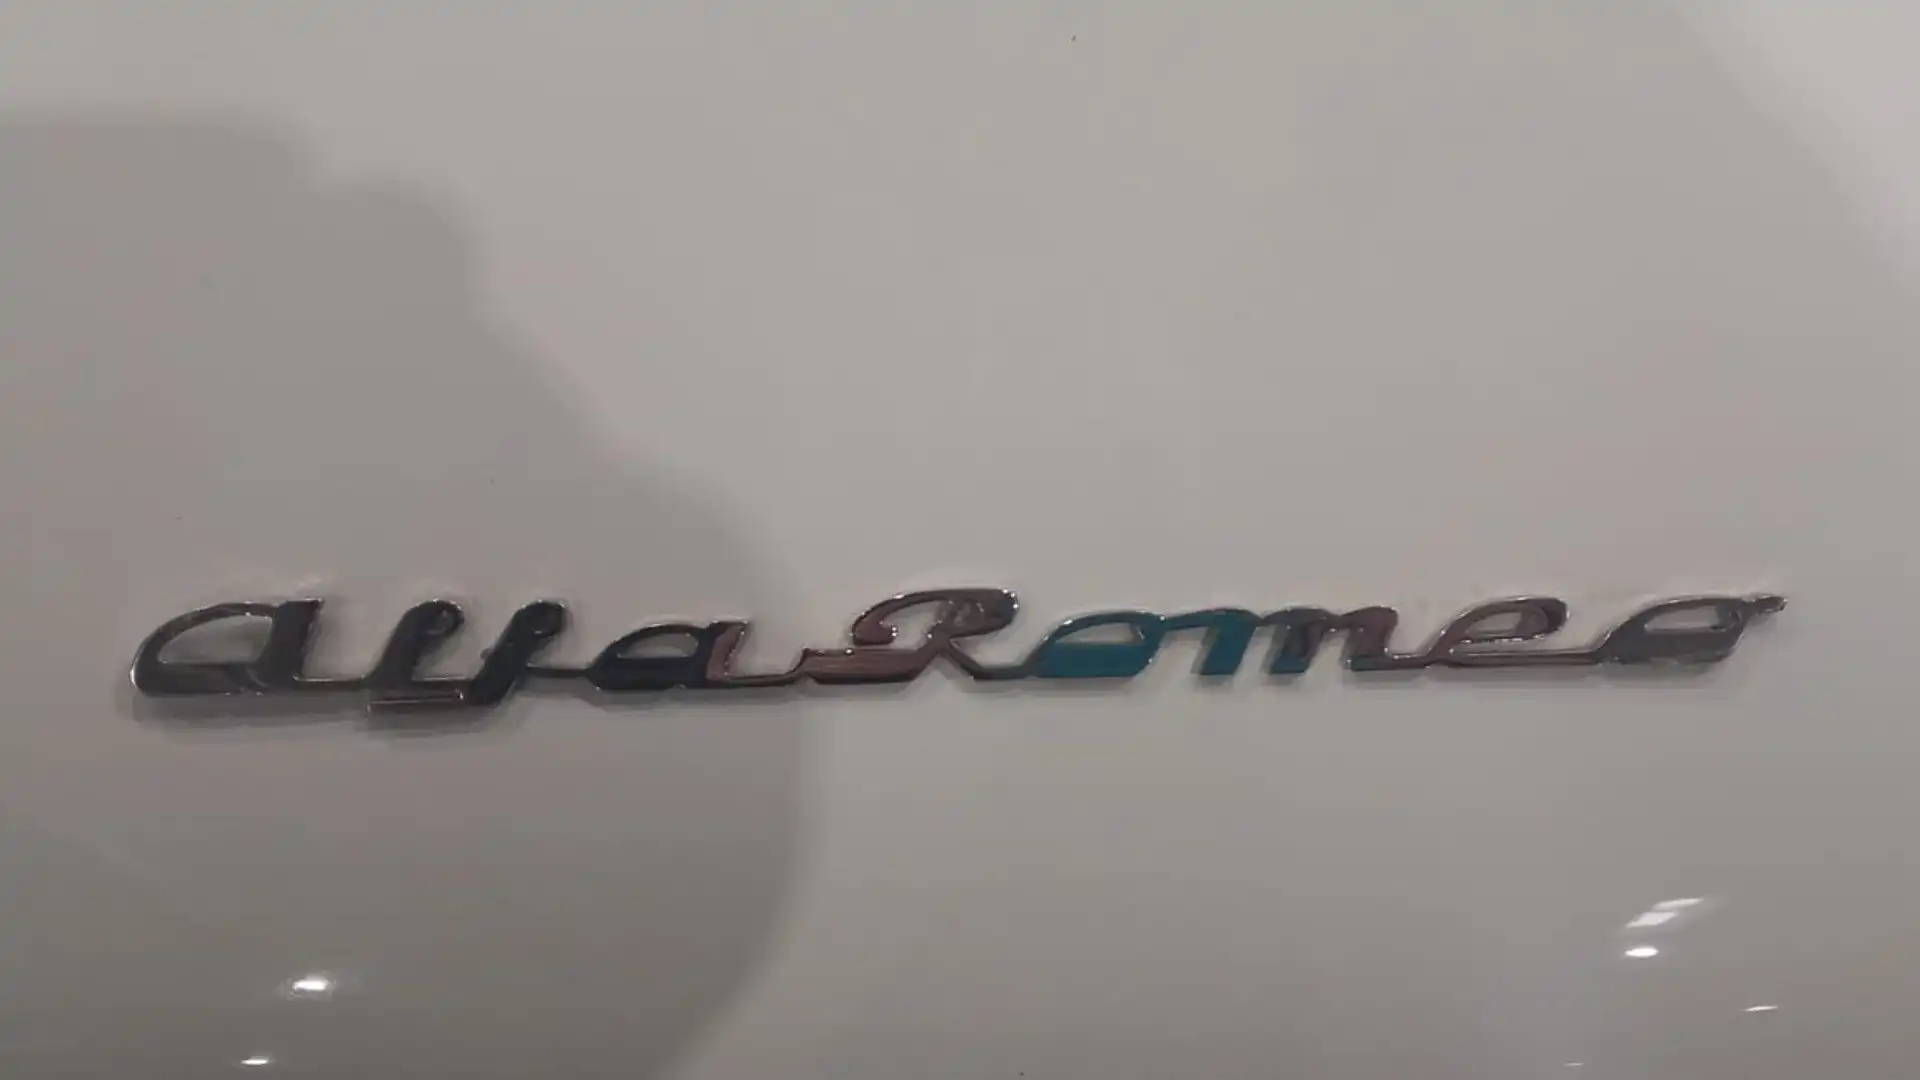 Rappresenta uno dei tanti gioielli dell'Alfa Romeo